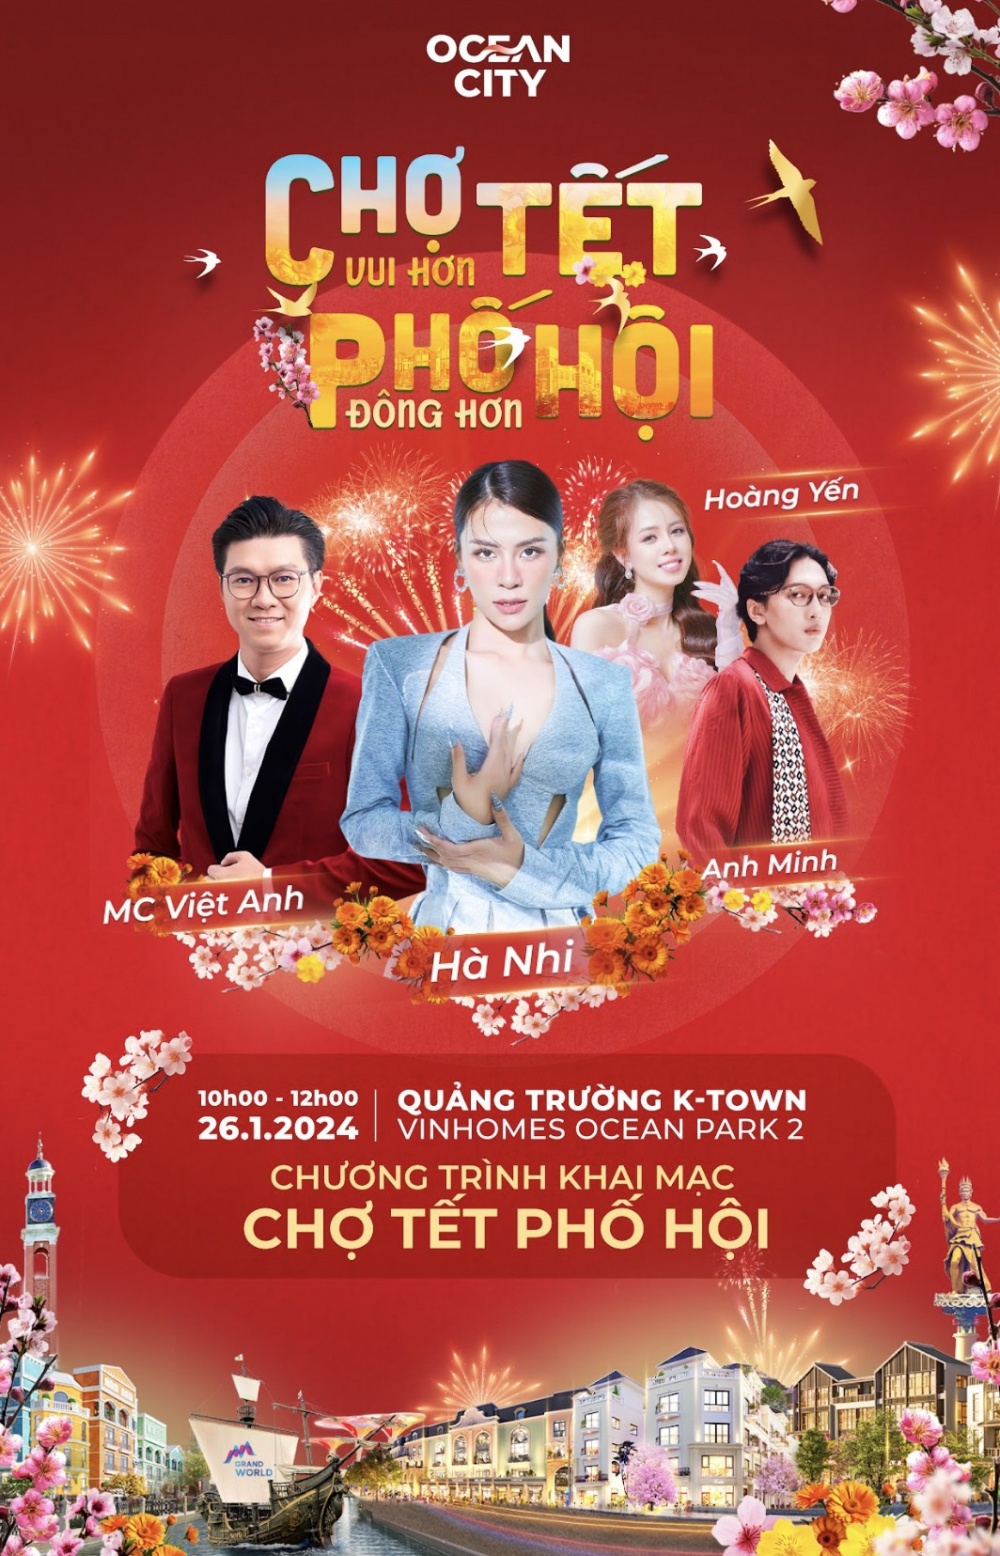  “Chợ Tết Phố Hội” sẽ có màn ra mắt hoành tráng vào ngày 26/1 tới đây với sự góp mặt của nữ ca sĩ Hà Nhi cùng nhiều giọng ca trẻ đang được nhiều người mến mộ.